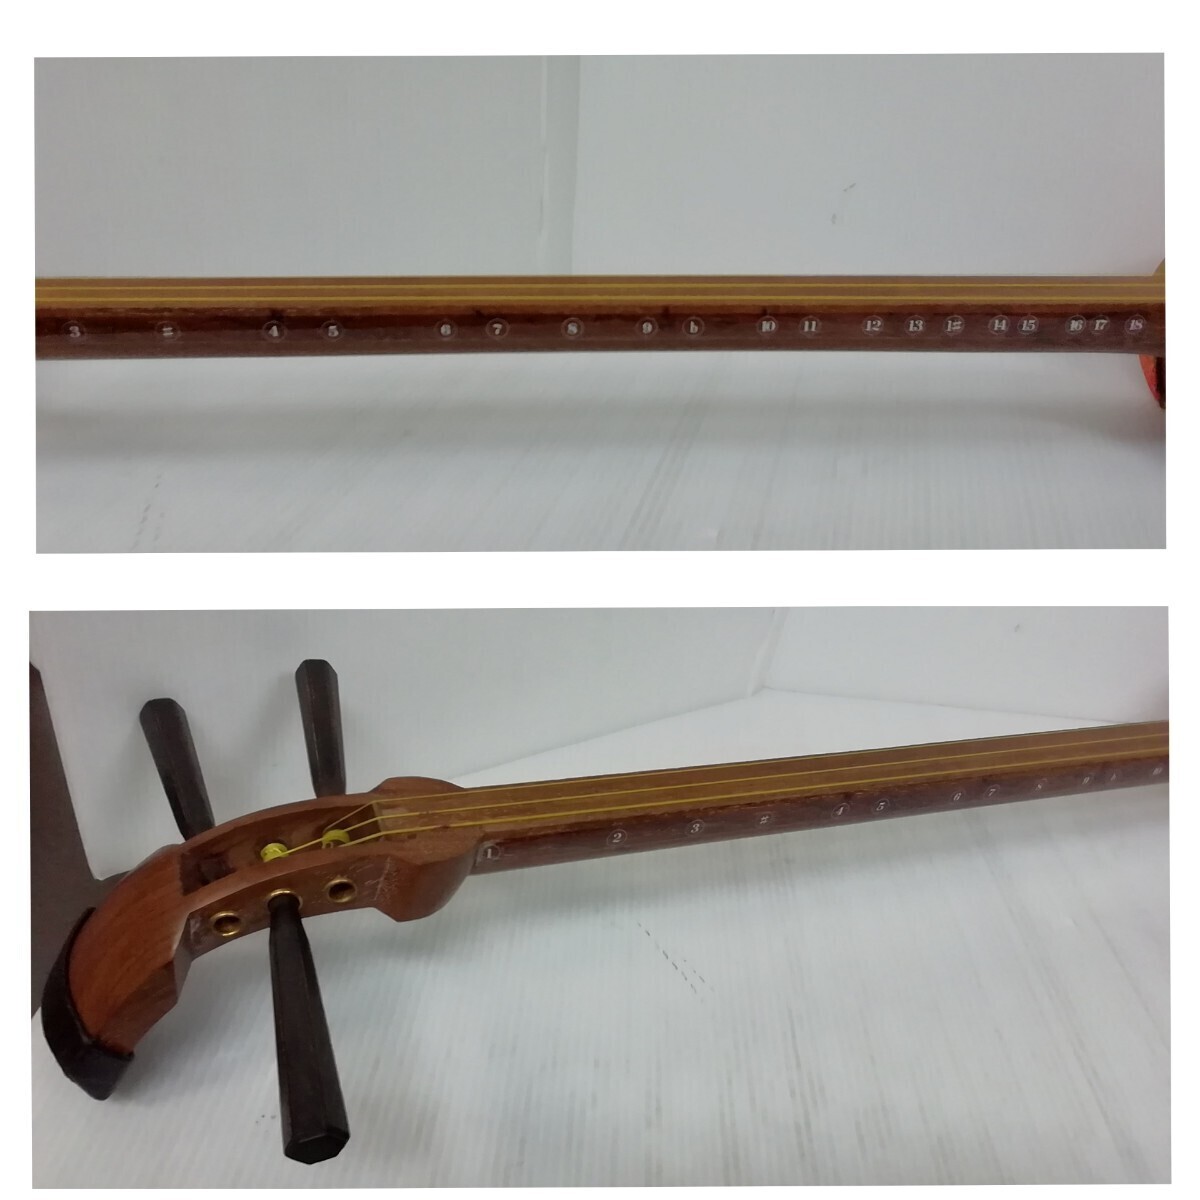  текущее состояние товар shamisen . палочки мягкий чехол есть традиционные японские музыкальные инструменты струнные инструменты фолк общая длина примерно 100cm начинающий предназначенный б/у товар интерьер старый инструмент танцы музыкальные инструменты 